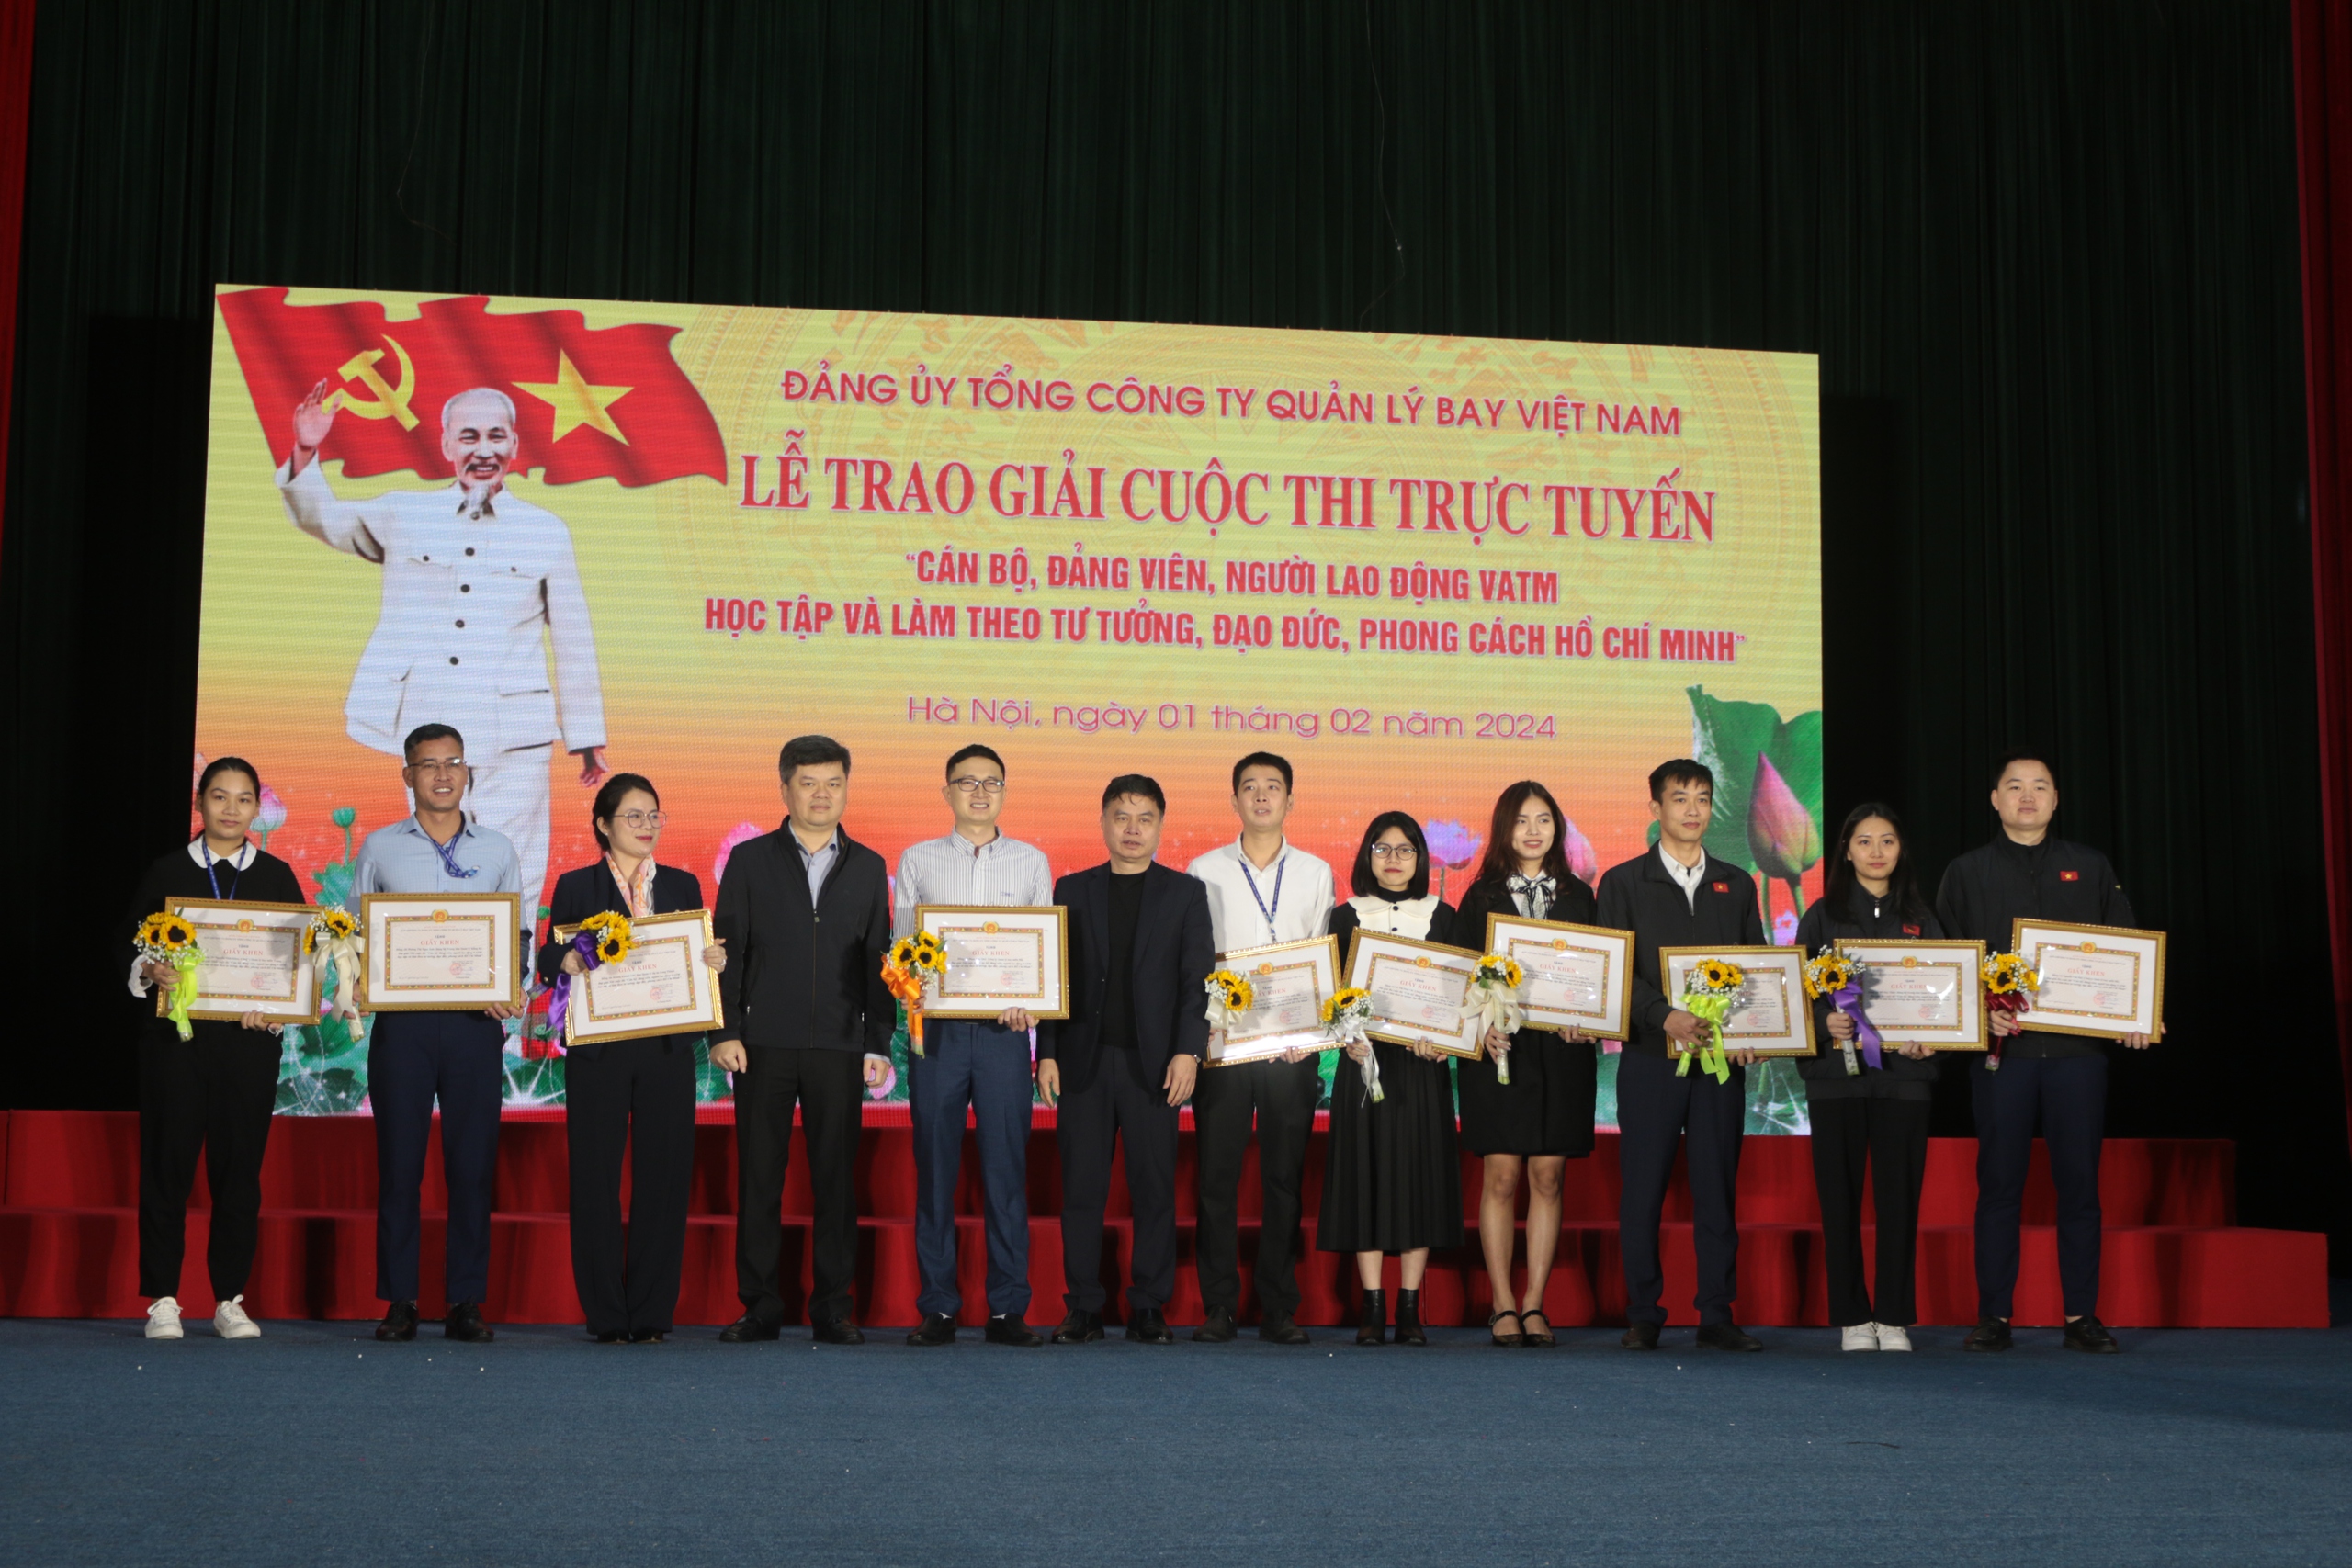 Trao giải cuộc thi "Cán bộ, đảng viên, người lao động VATM học tập, làm theo tư tưởng, đạo đức, phong cách Hồ Chí Minh"- Ảnh 7.